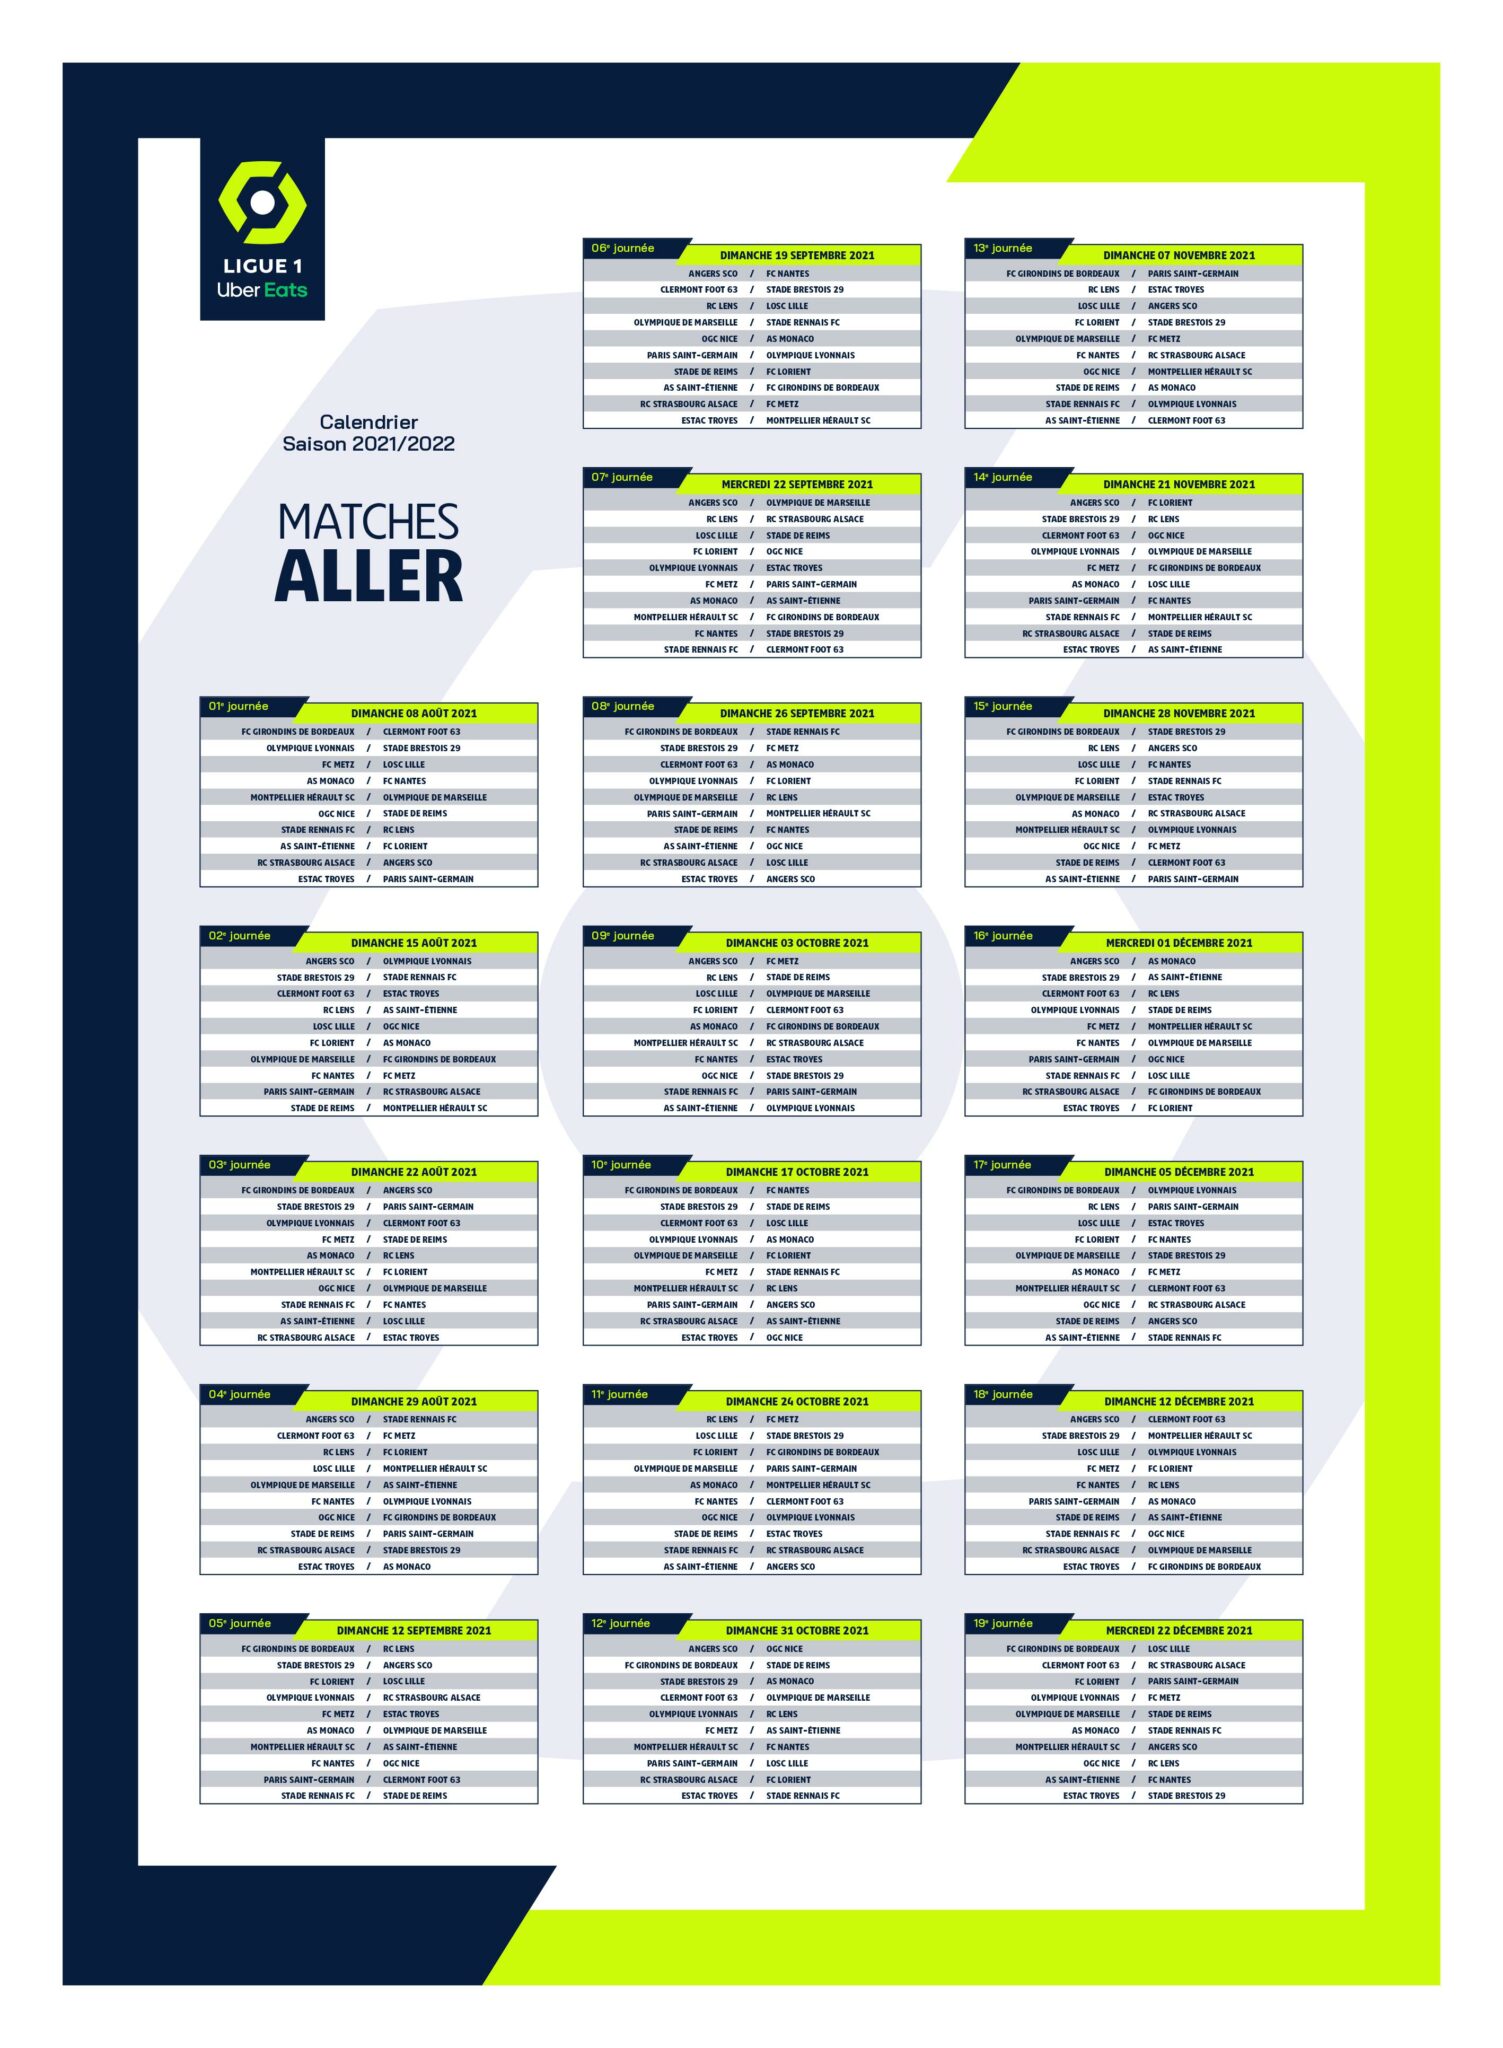 La calendrier complet de la Ligue 1 dévoilé ! - Alsa'Sports